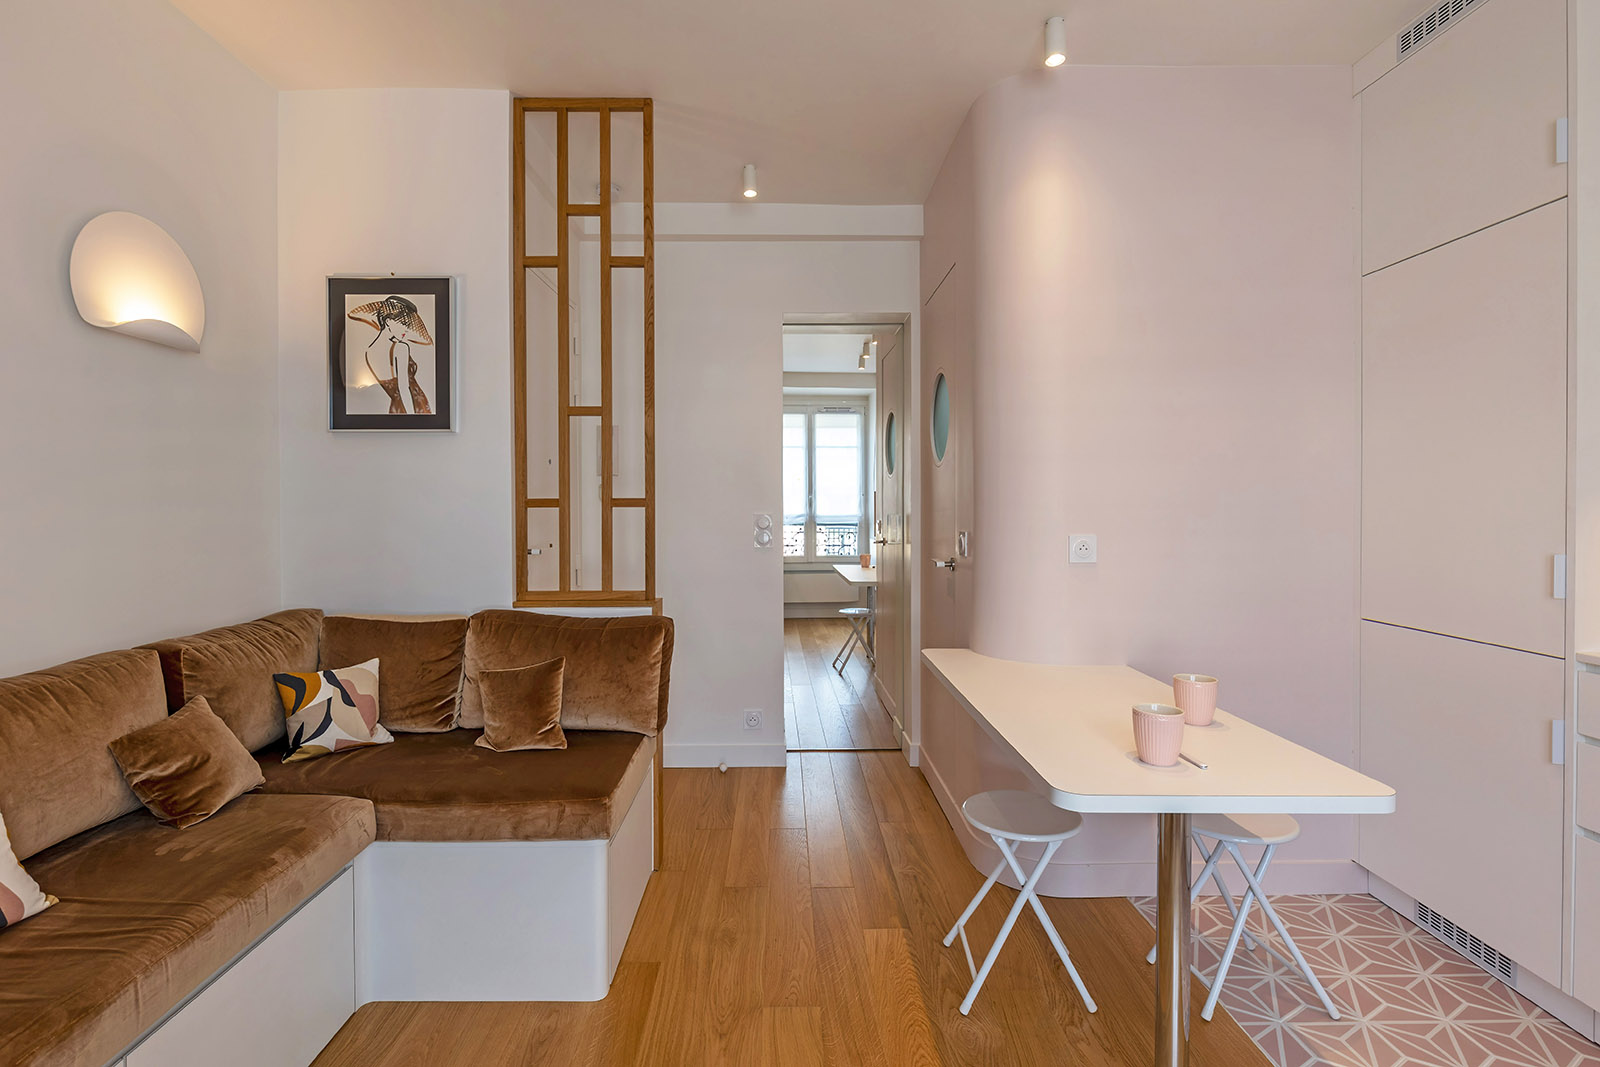 25 m2 optimisé - La vue du salon vers la chambre - Flora Auvray architecte d'intérieur